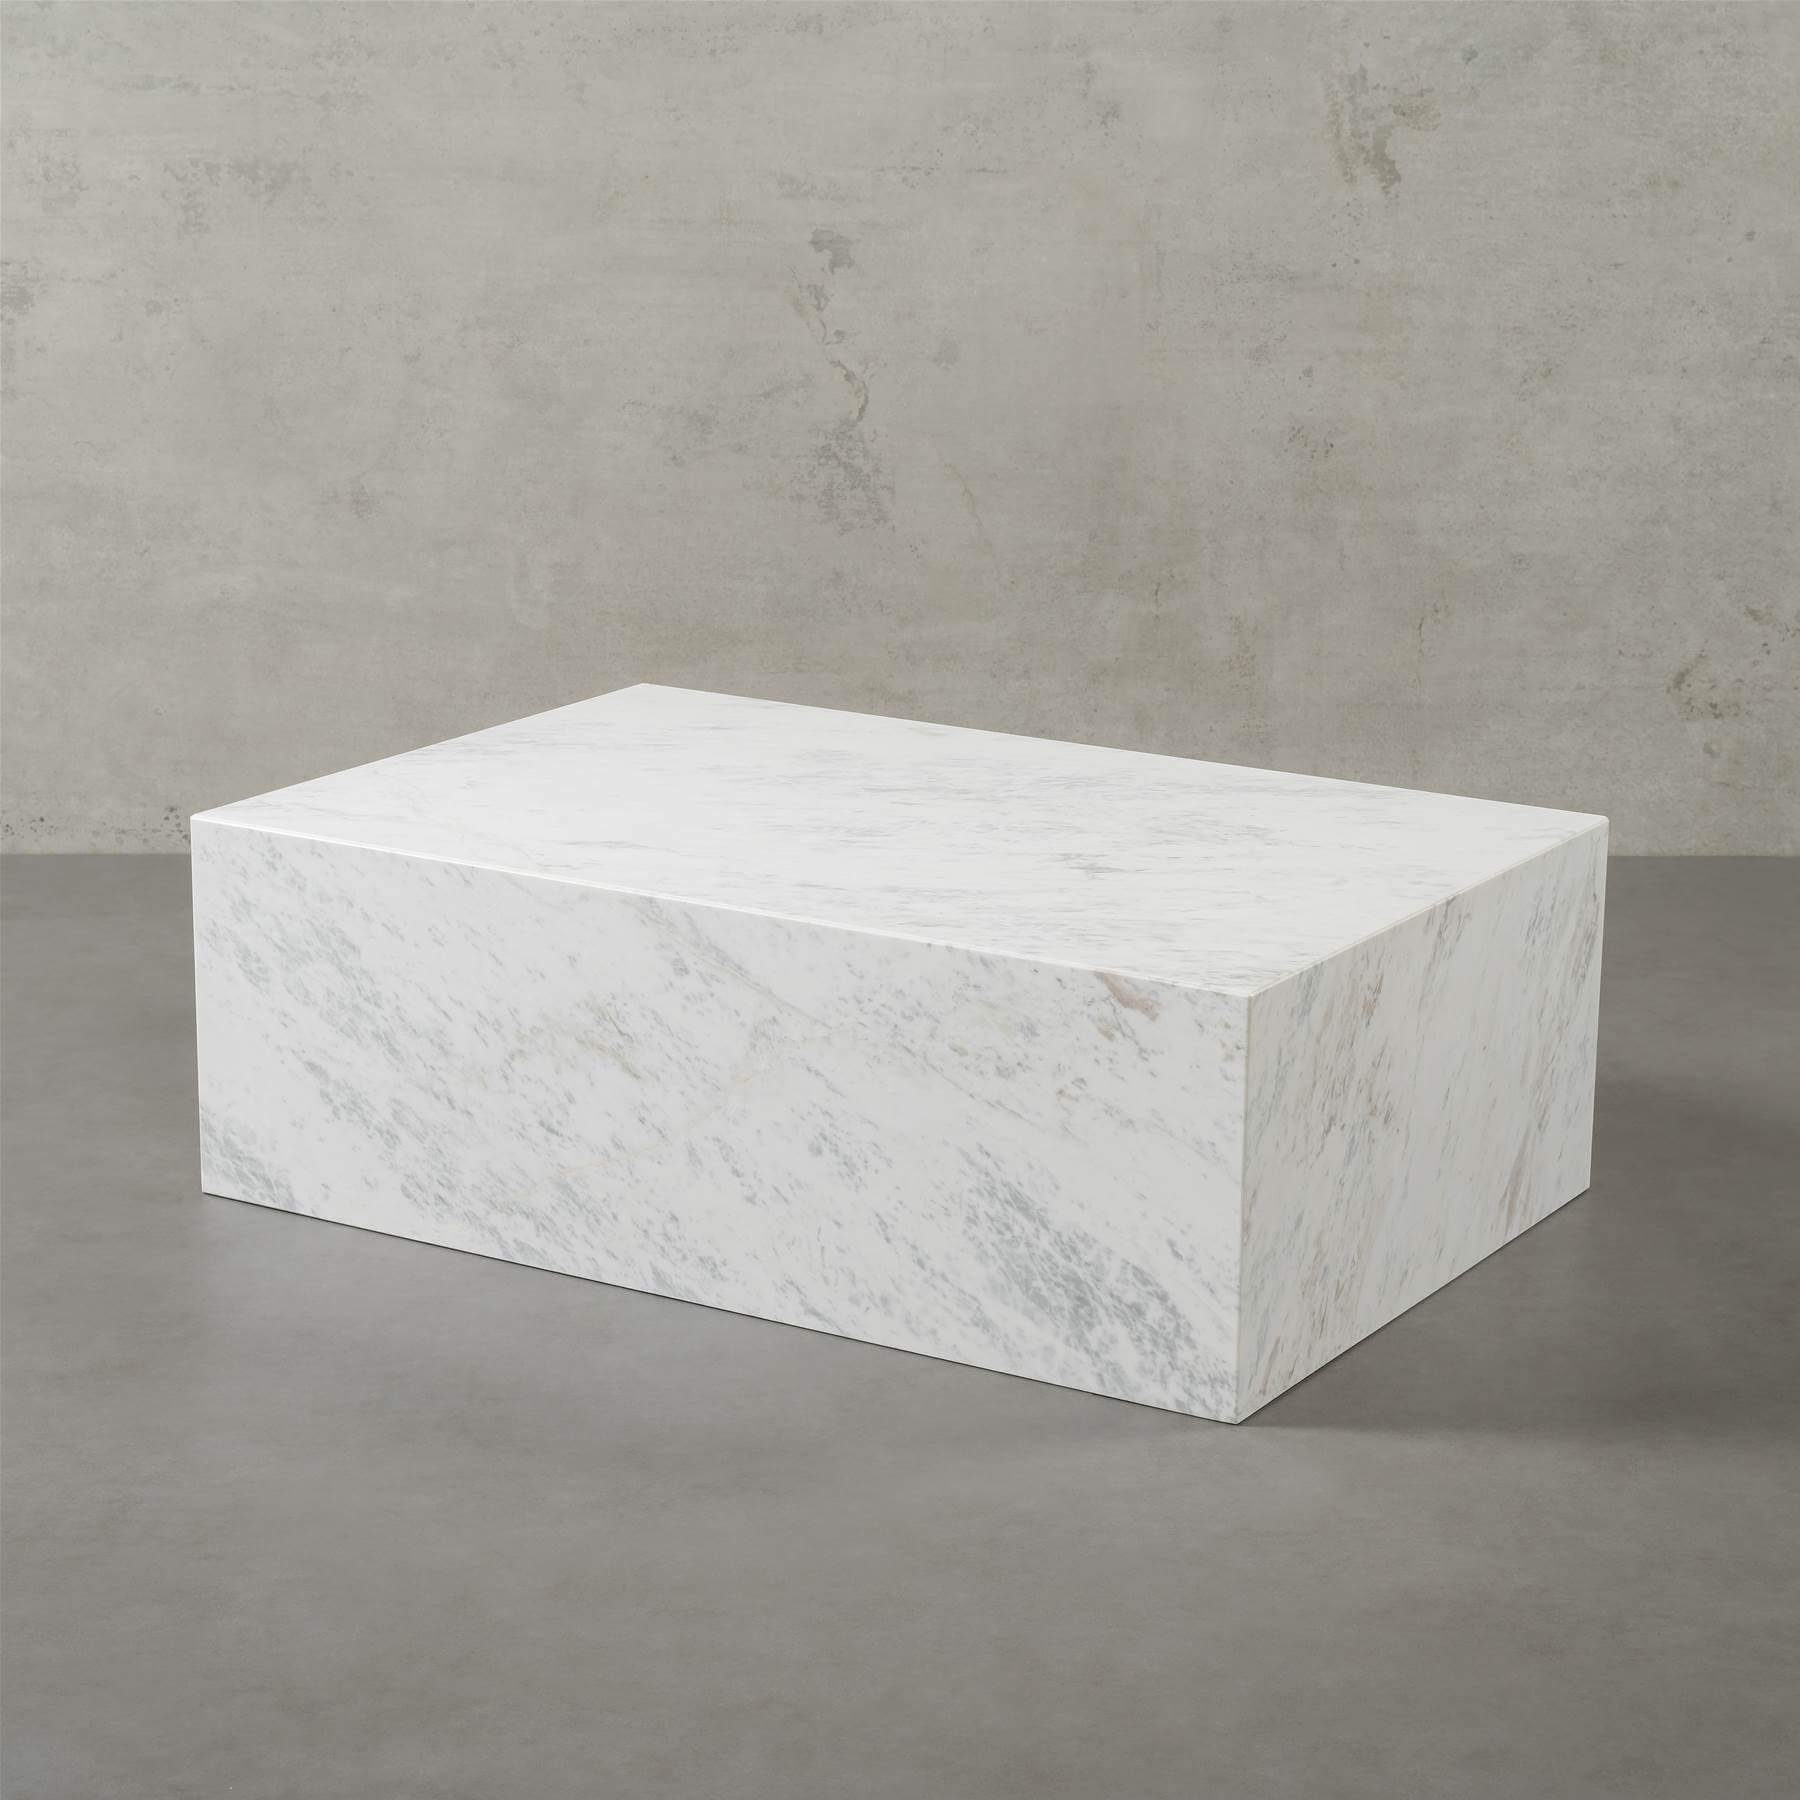 MAGNA Atelier Couchtisch ASPEN mit ECHTEM MARMOR, Wohnzimmer Tisch eckig, Naturstein, 90x60x30cm Olympus White